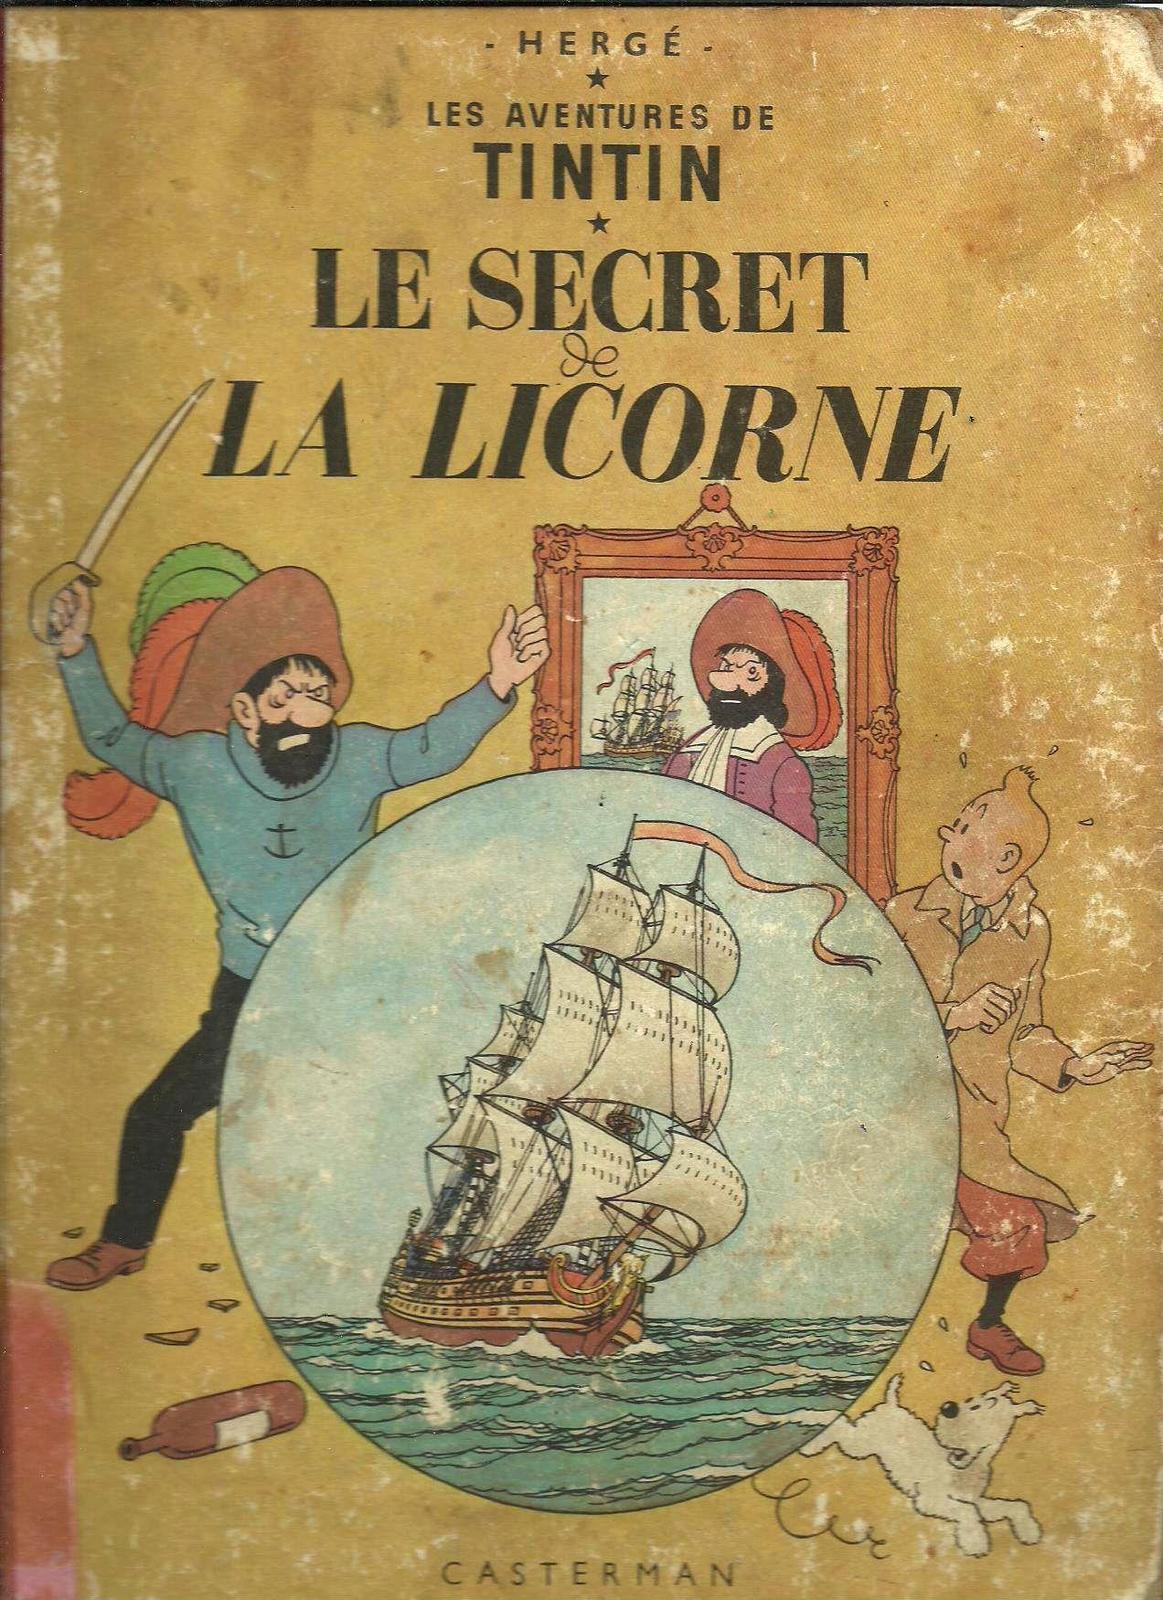 Hergé: Le Secret de La Licorne (French language, 1948)